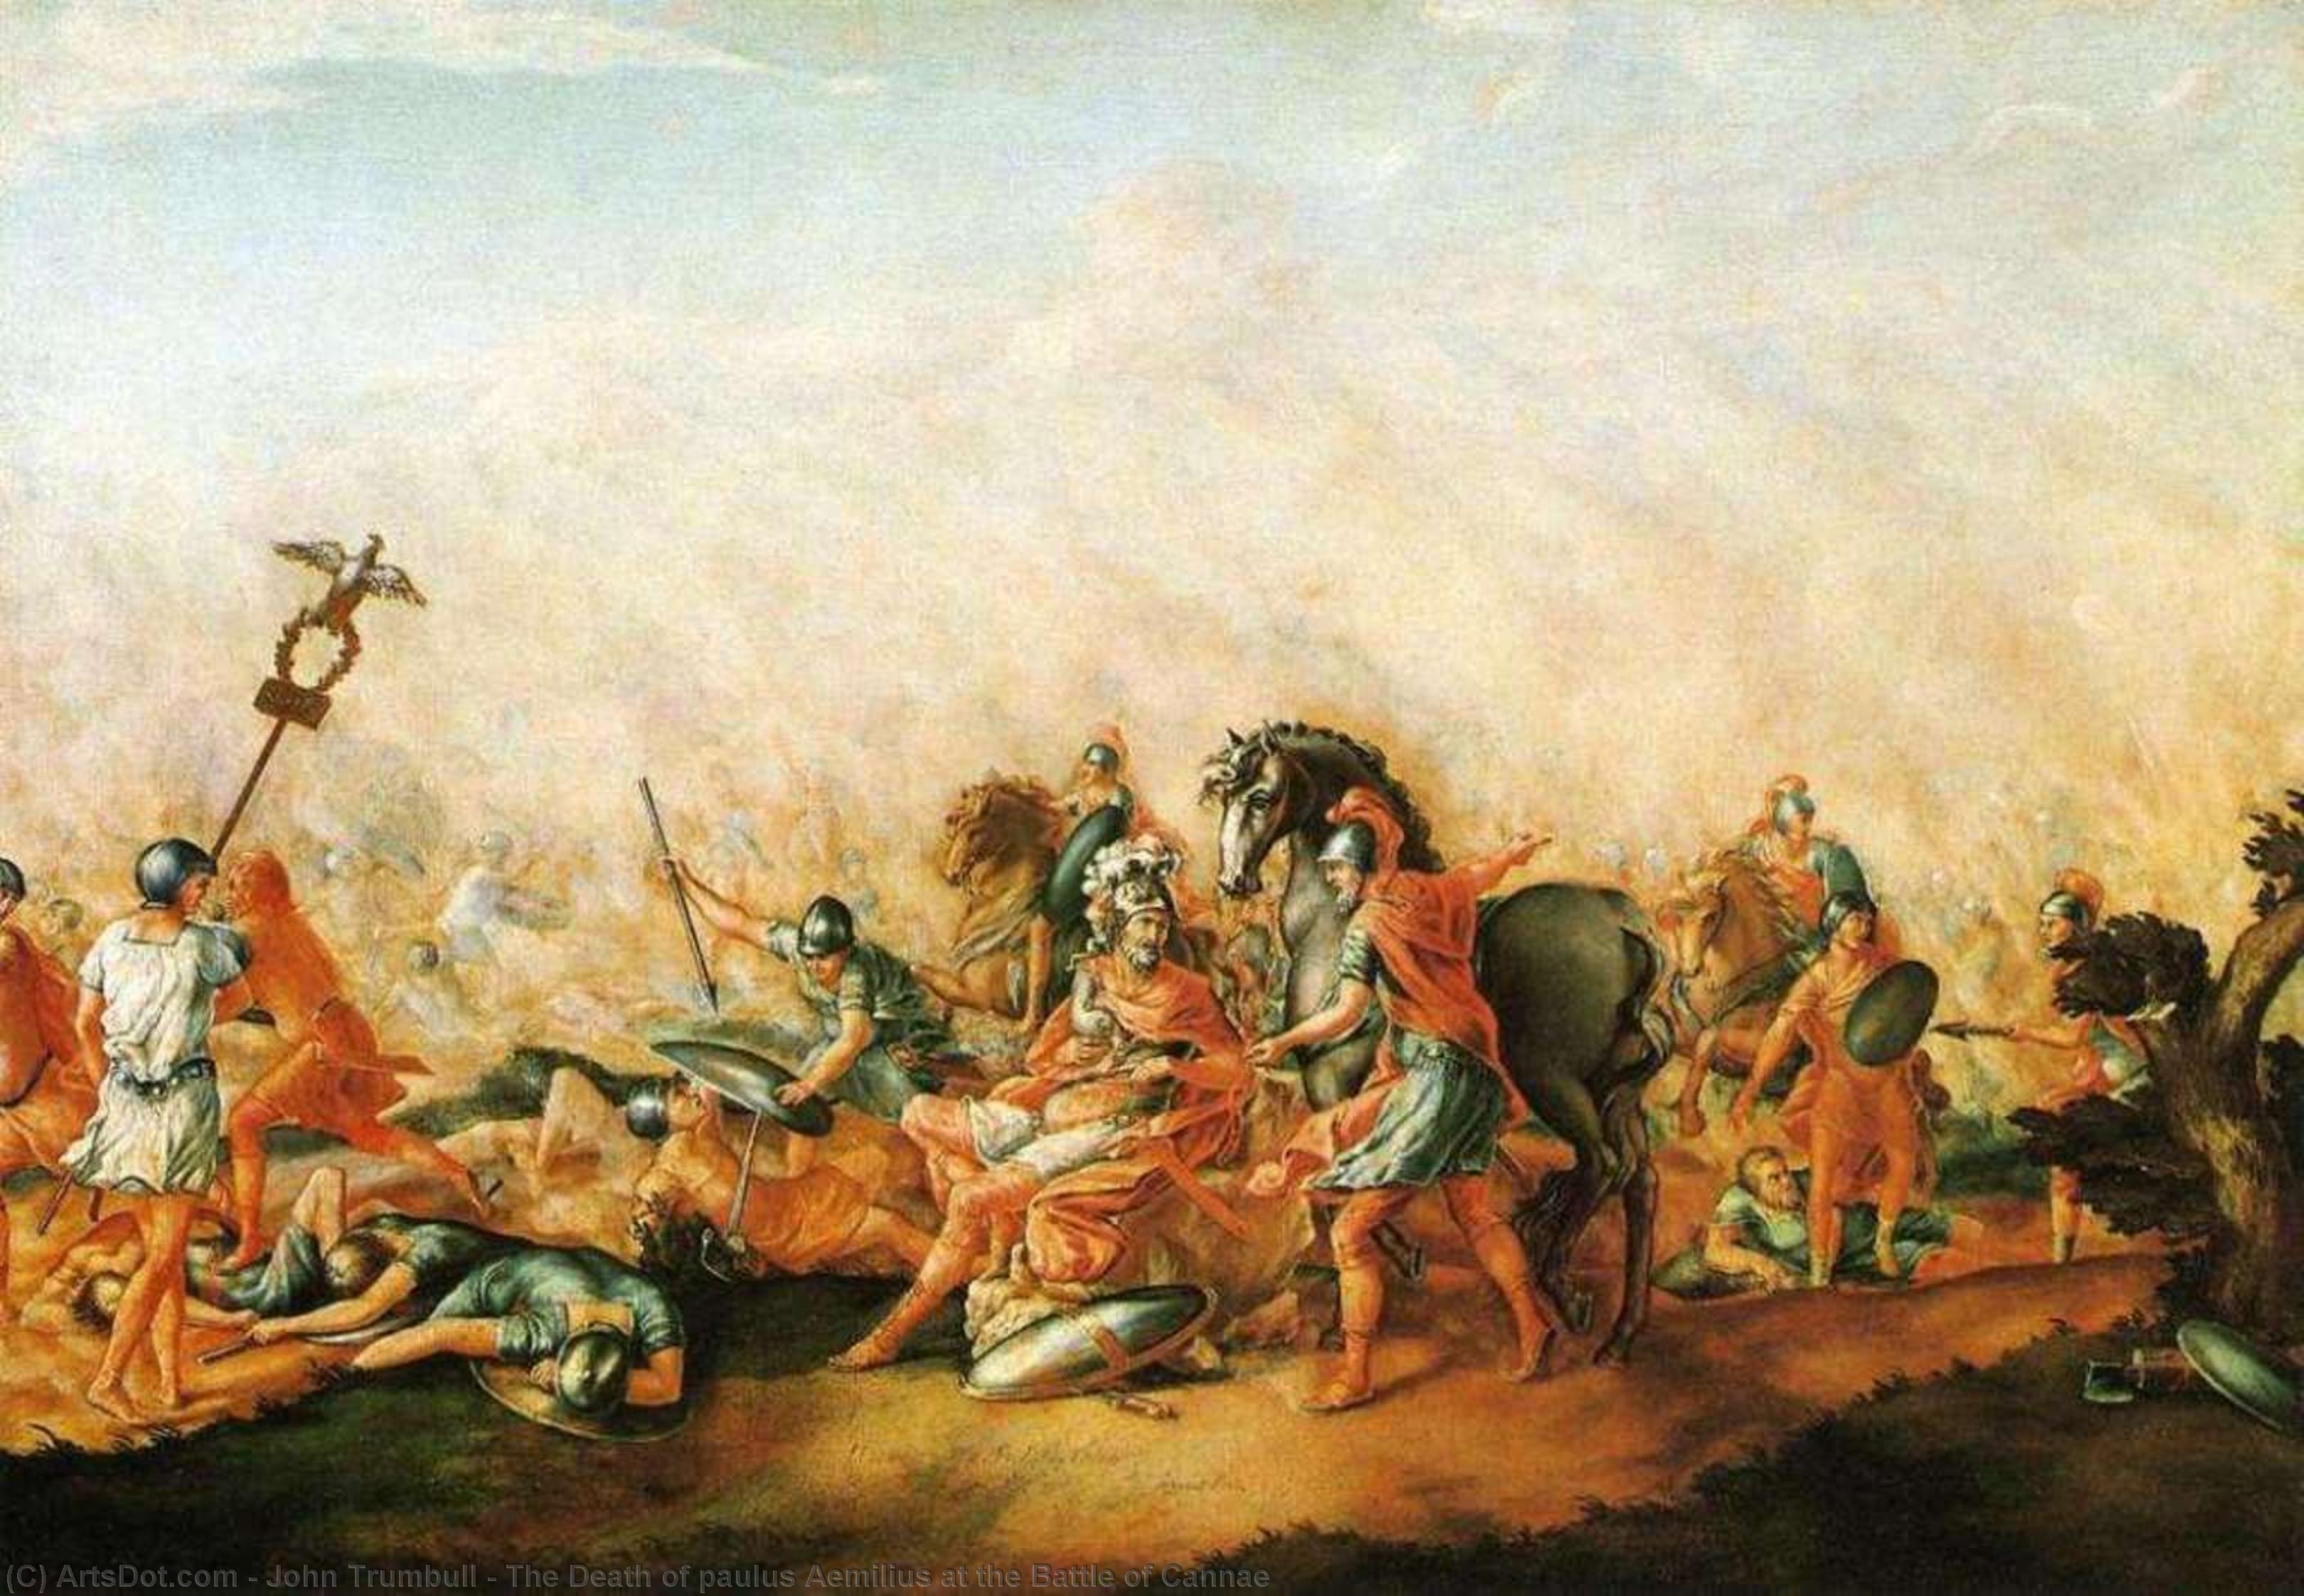 Wikioo.org - Bách khoa toàn thư về mỹ thuật - Vẽ tranh, Tác phẩm nghệ thuật John Trumbull - The Death of paulus Aemilius at the Battle of Cannae